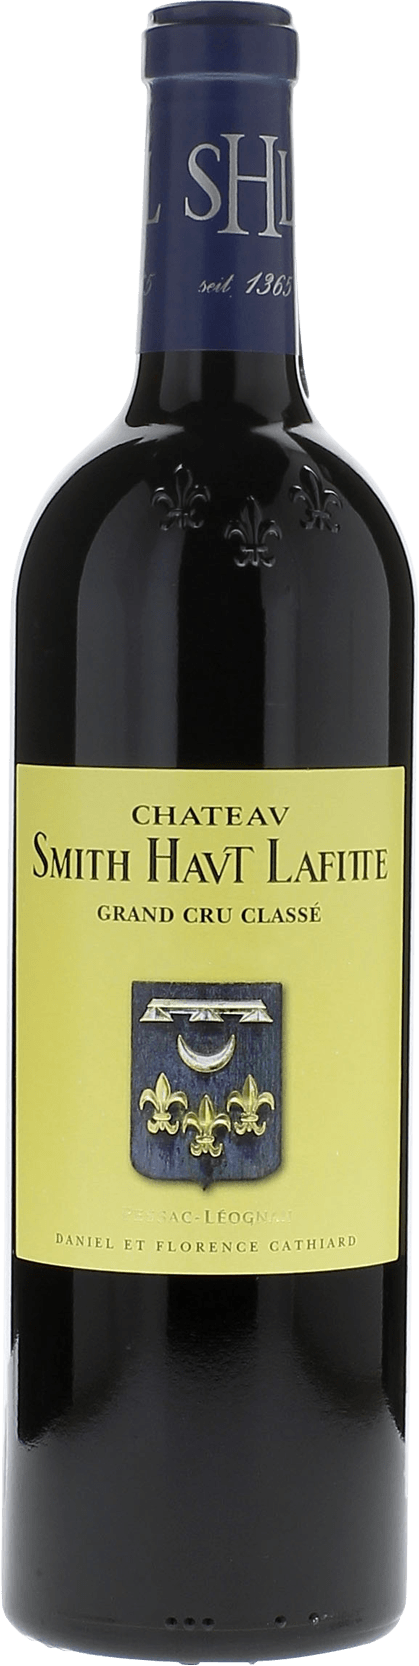 Smith haut lafitte 2016 Grand Cru Class Graves, Bordeaux rouge